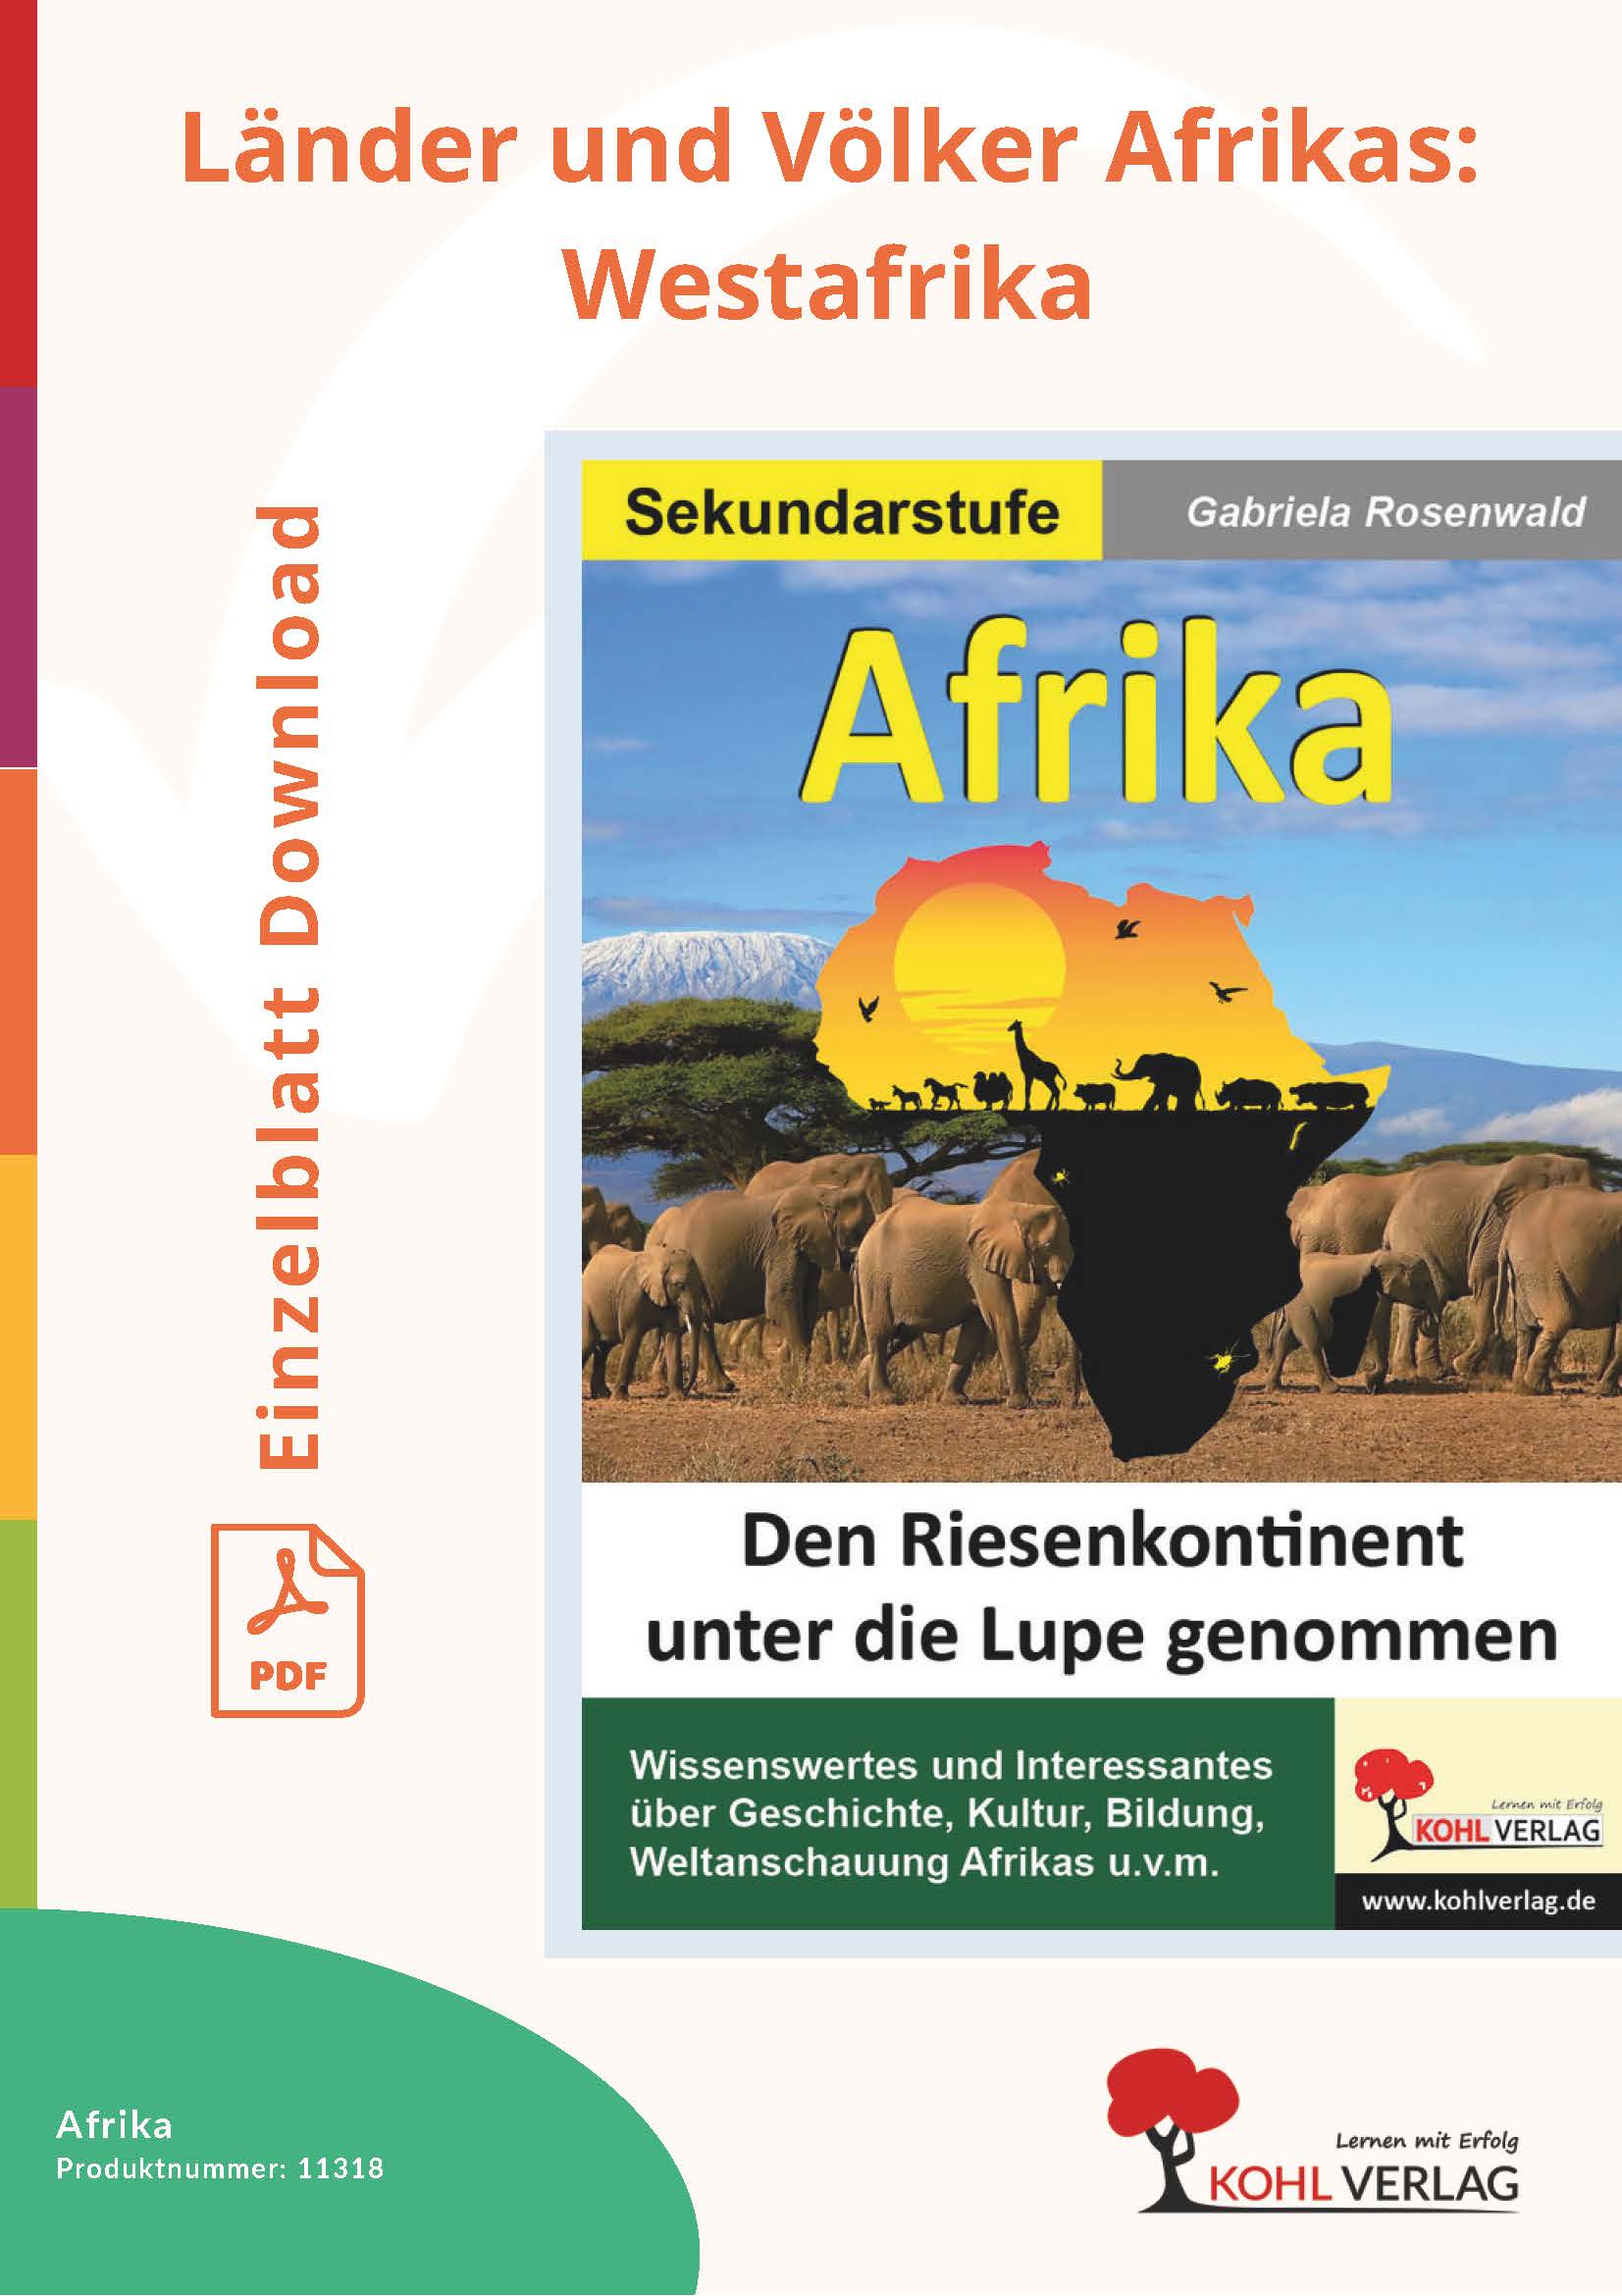 Afrika - Länder und Völker Afrikas: Westafrika